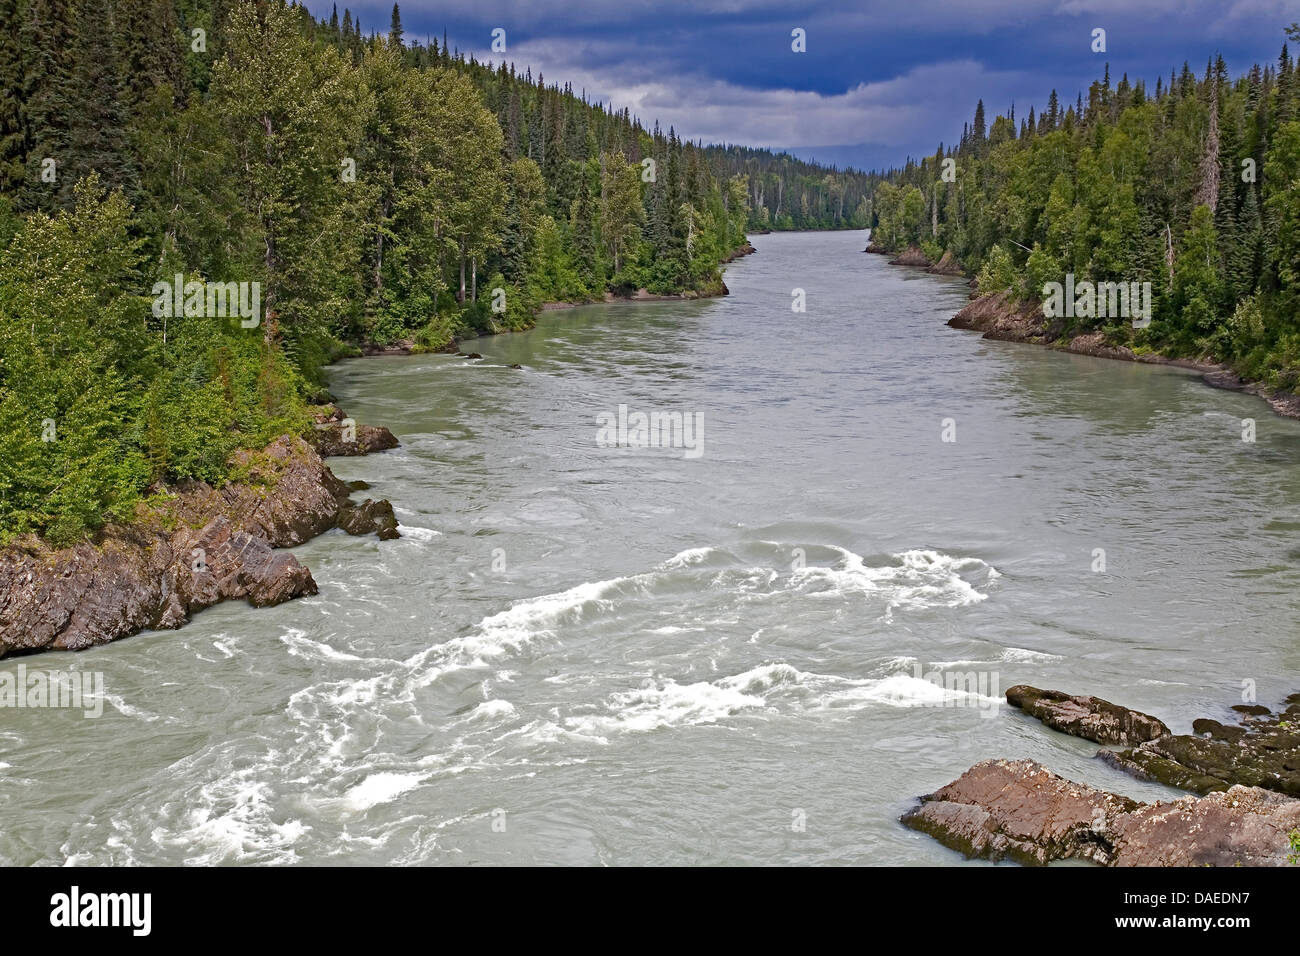 La rivière Nass, Canada, Colombie-Britannique Banque D'Images